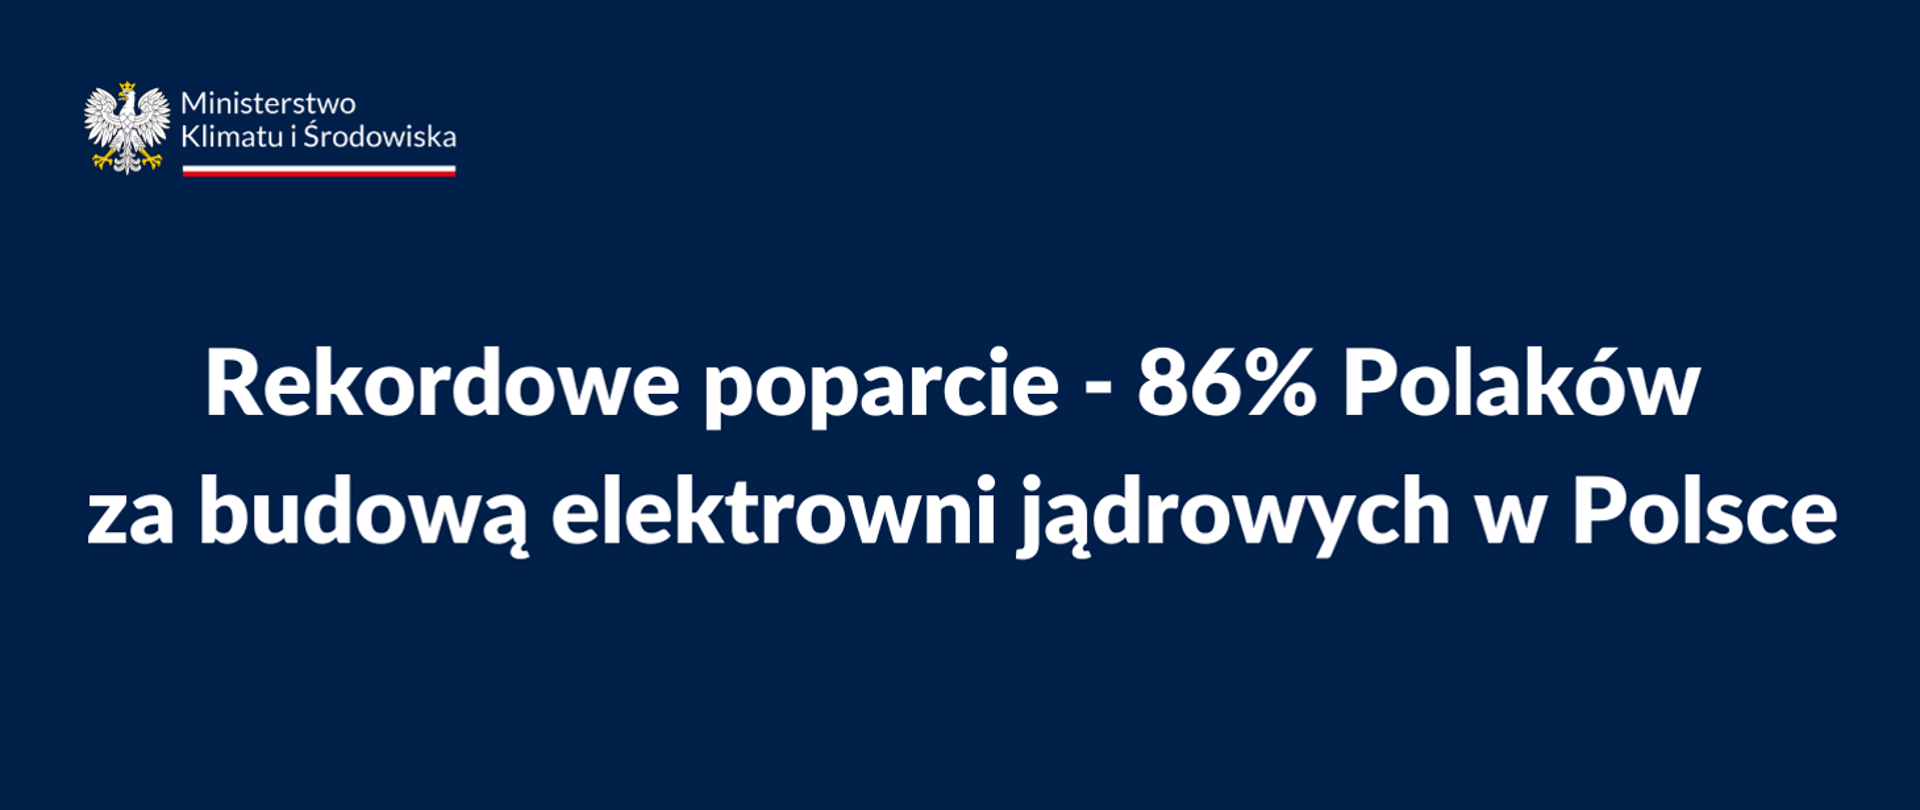 Rekordowe poparcie - 86% Polaków za budową elektrowni jądrowych w Polsce